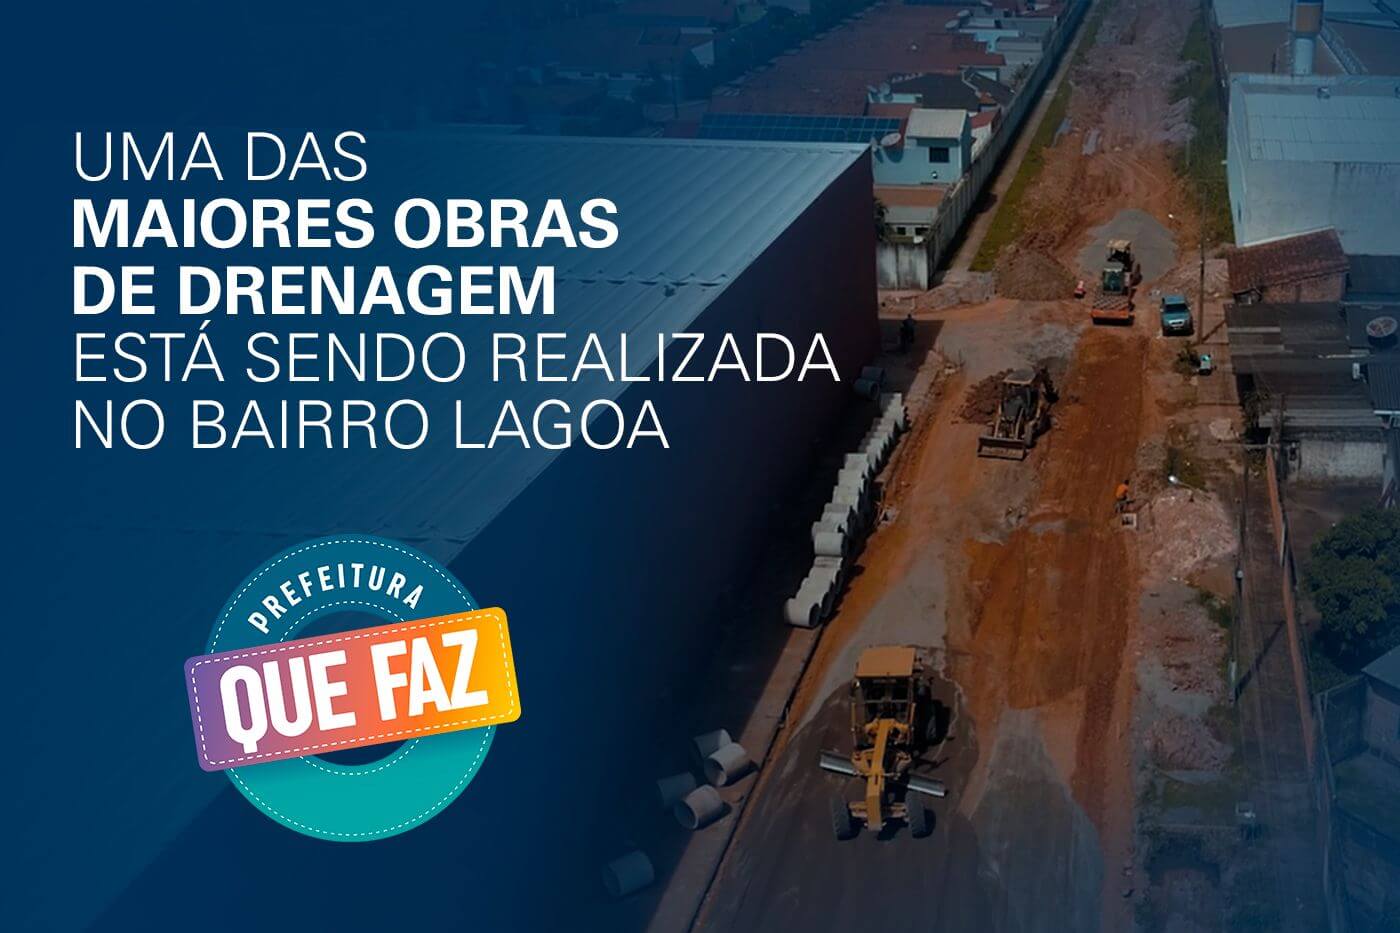 Moradores do bairro Lagoa recebem obras de drenagem da Prefeitura